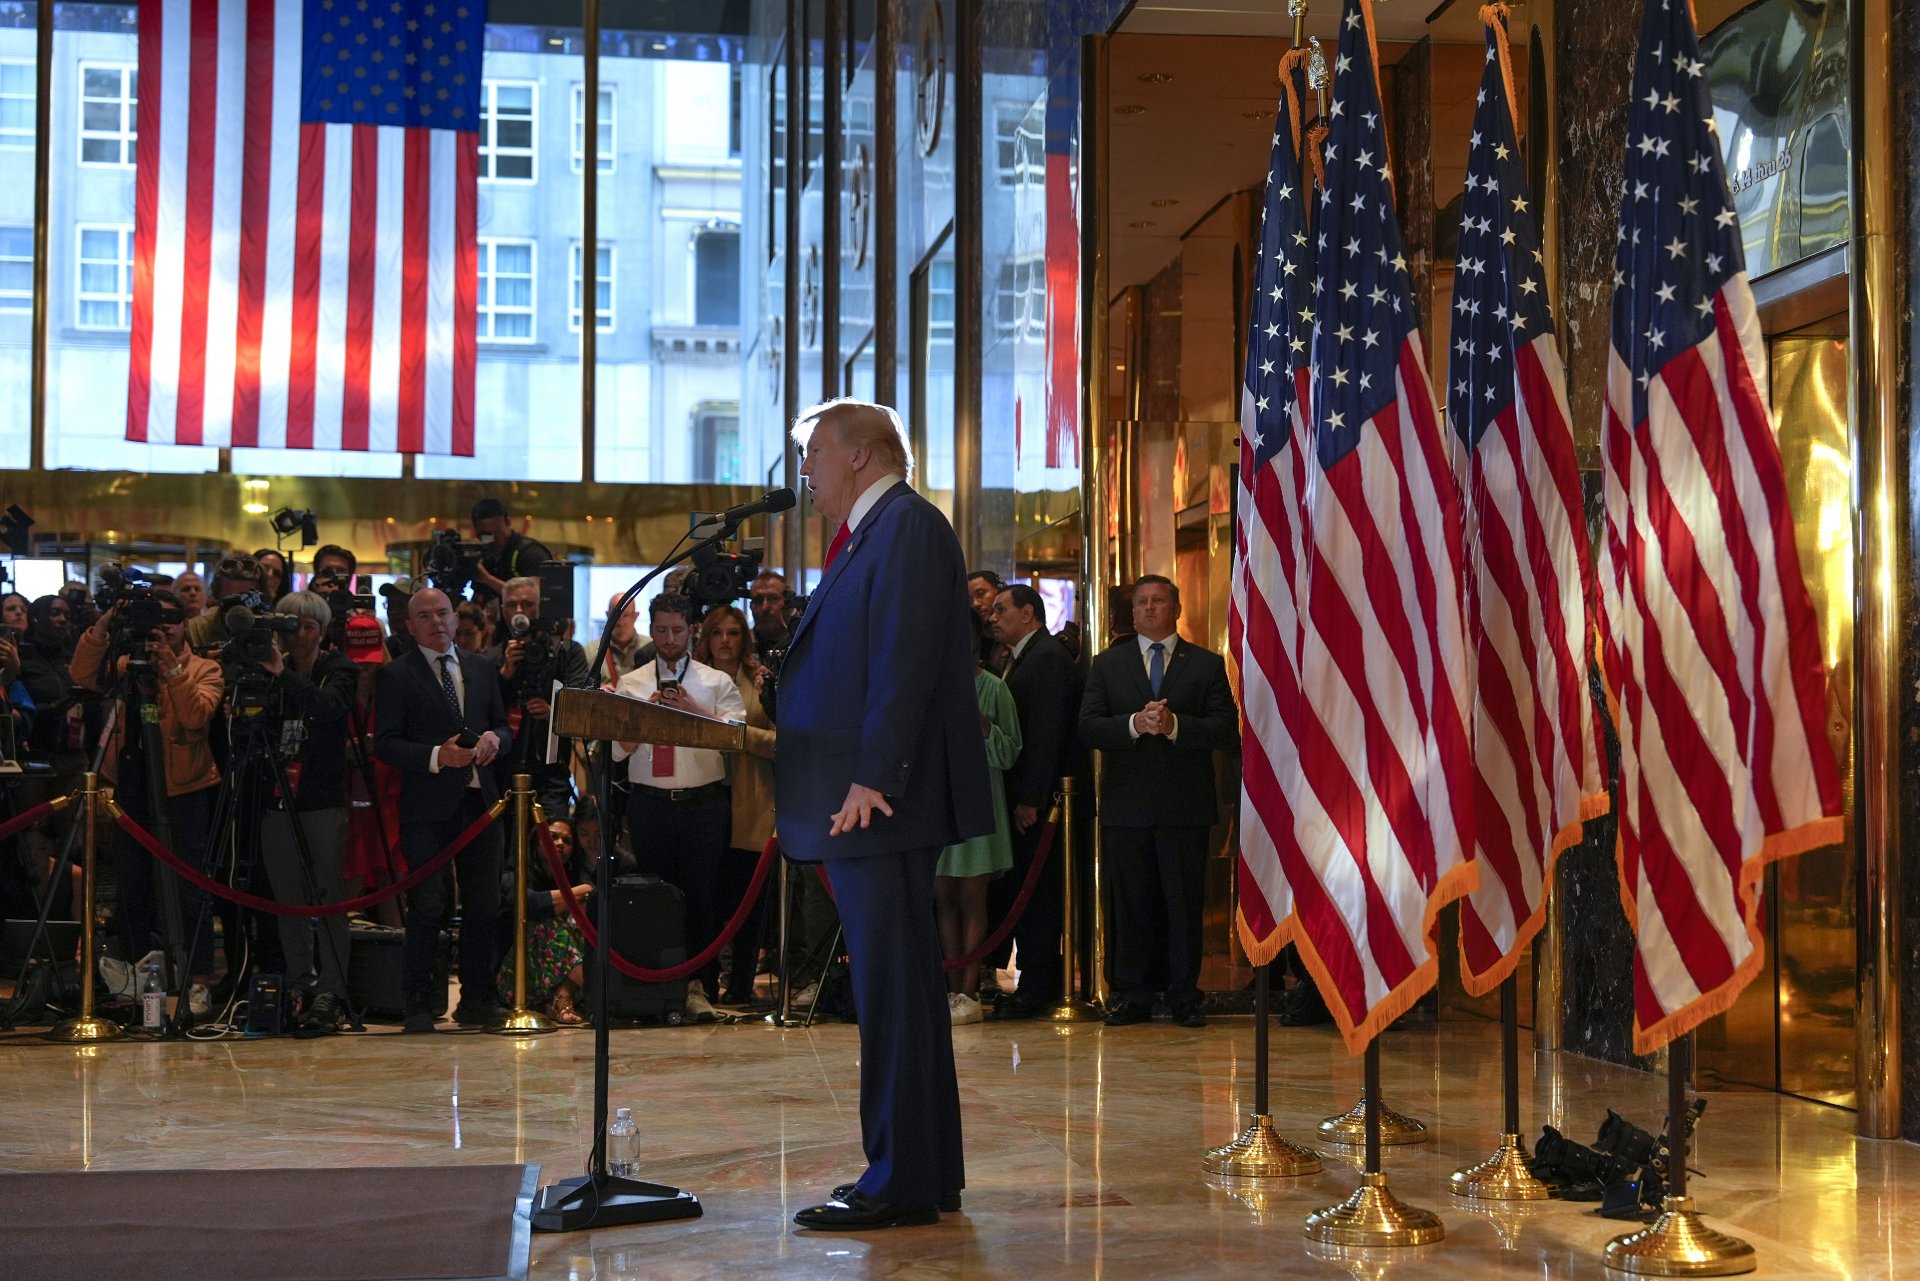 Тръмп говори от фоайето на притежавания от него небостъргач "Тръмп Тауър" в Манхатън, където през 2015 г. обяви кандидатурата си за президент